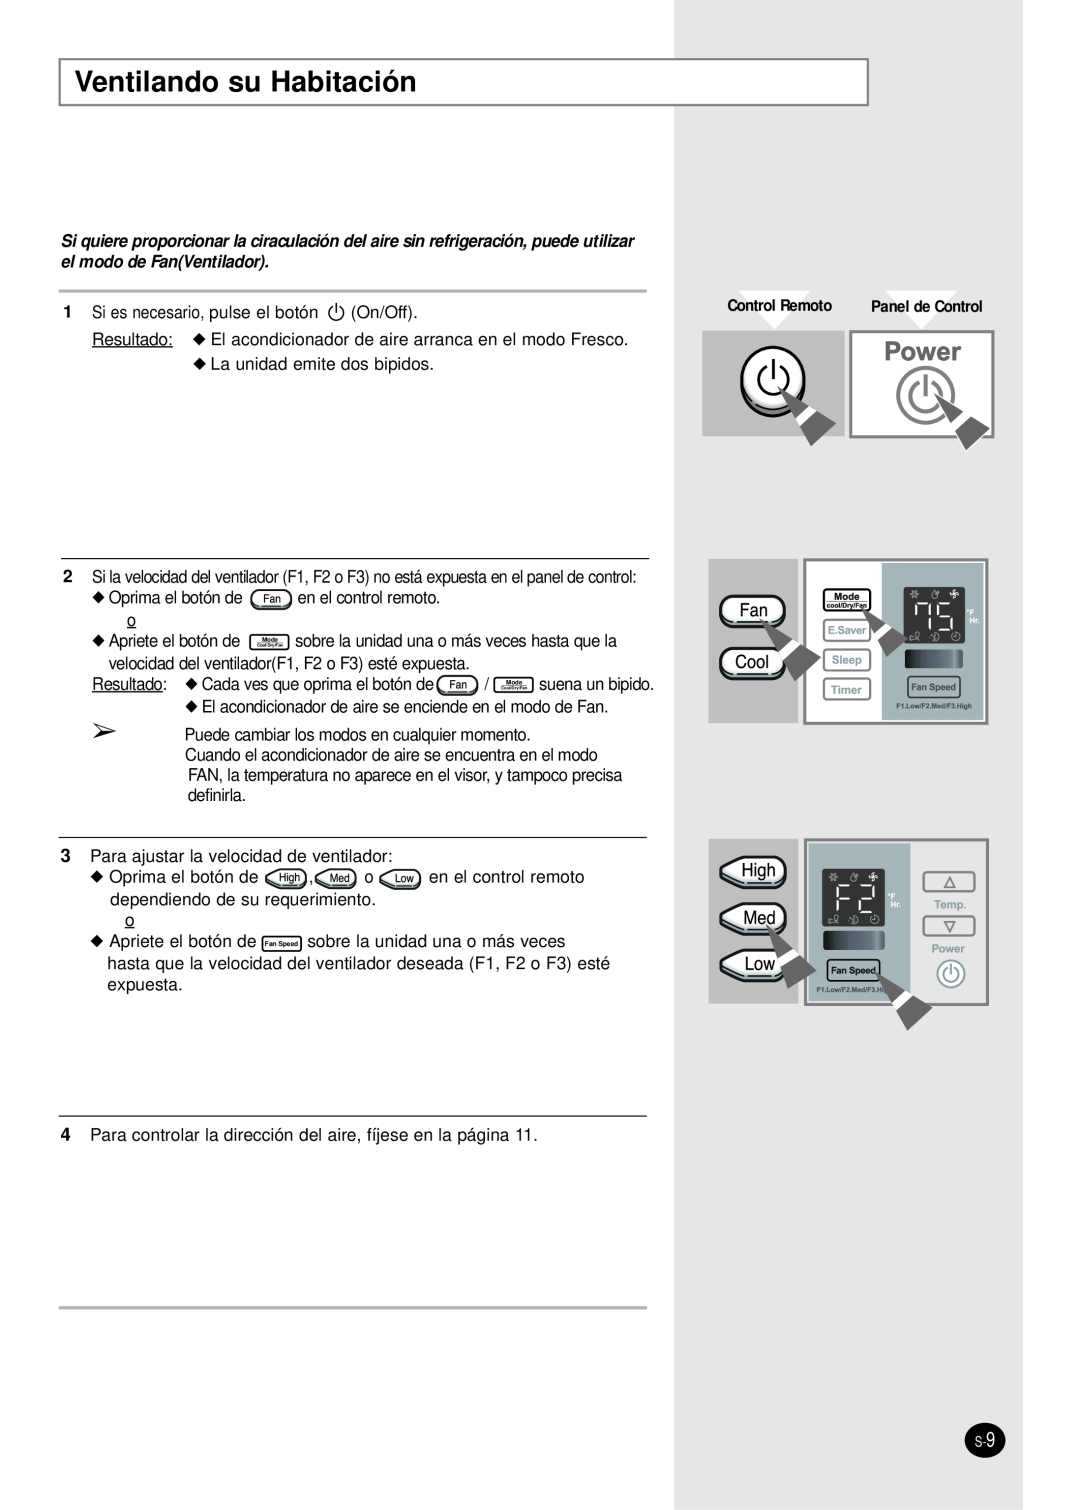 Samsung manual Ventilando su Habitación, Control Remoto 